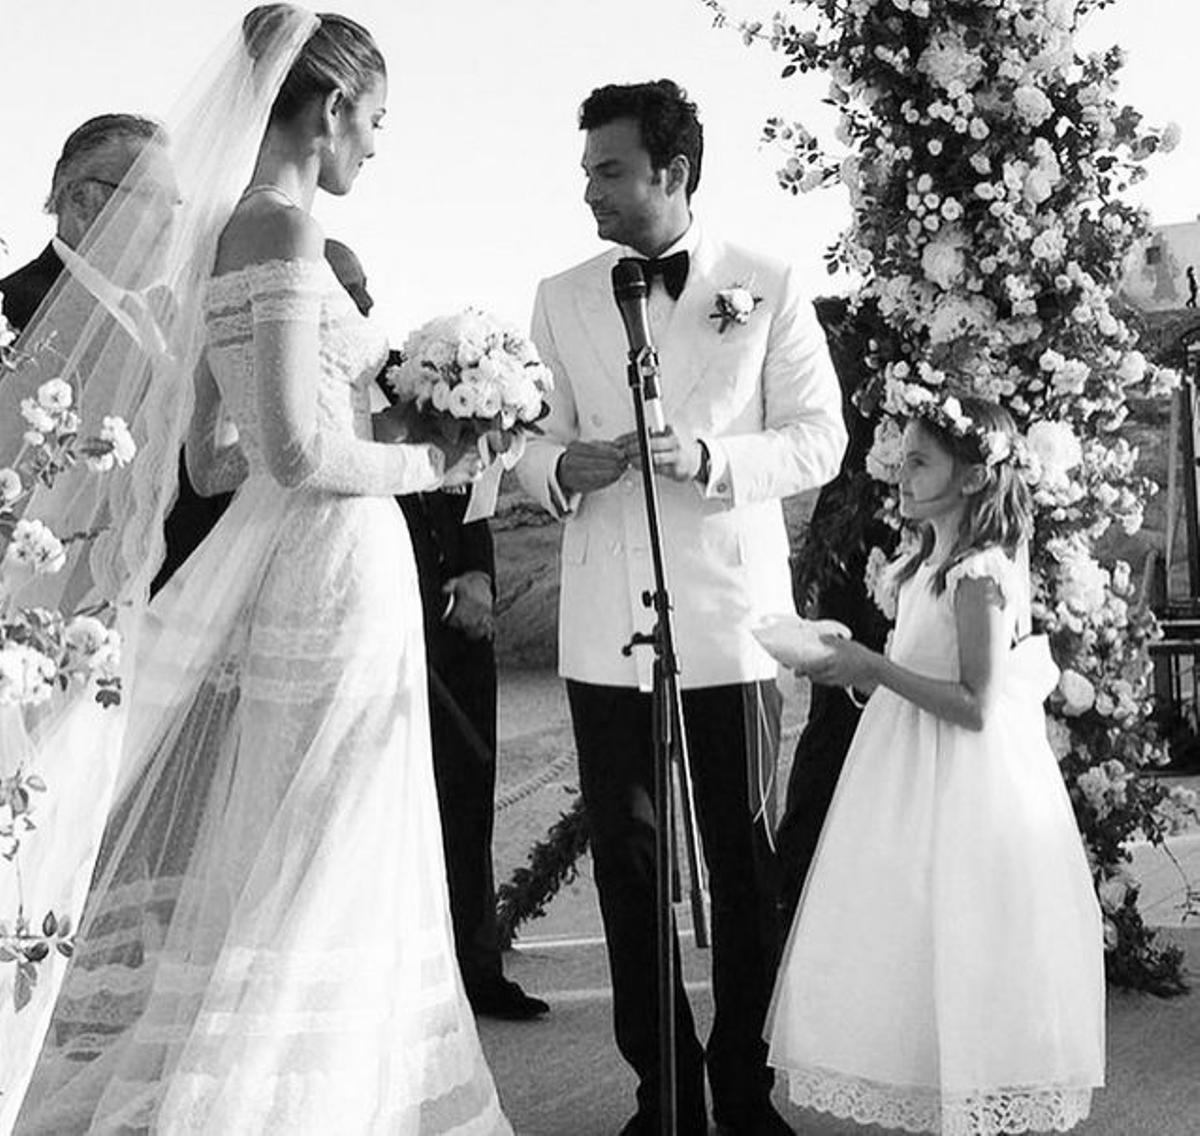 La boda de Ana Beatriz Barros: los novios se dan el 'sí quiero'